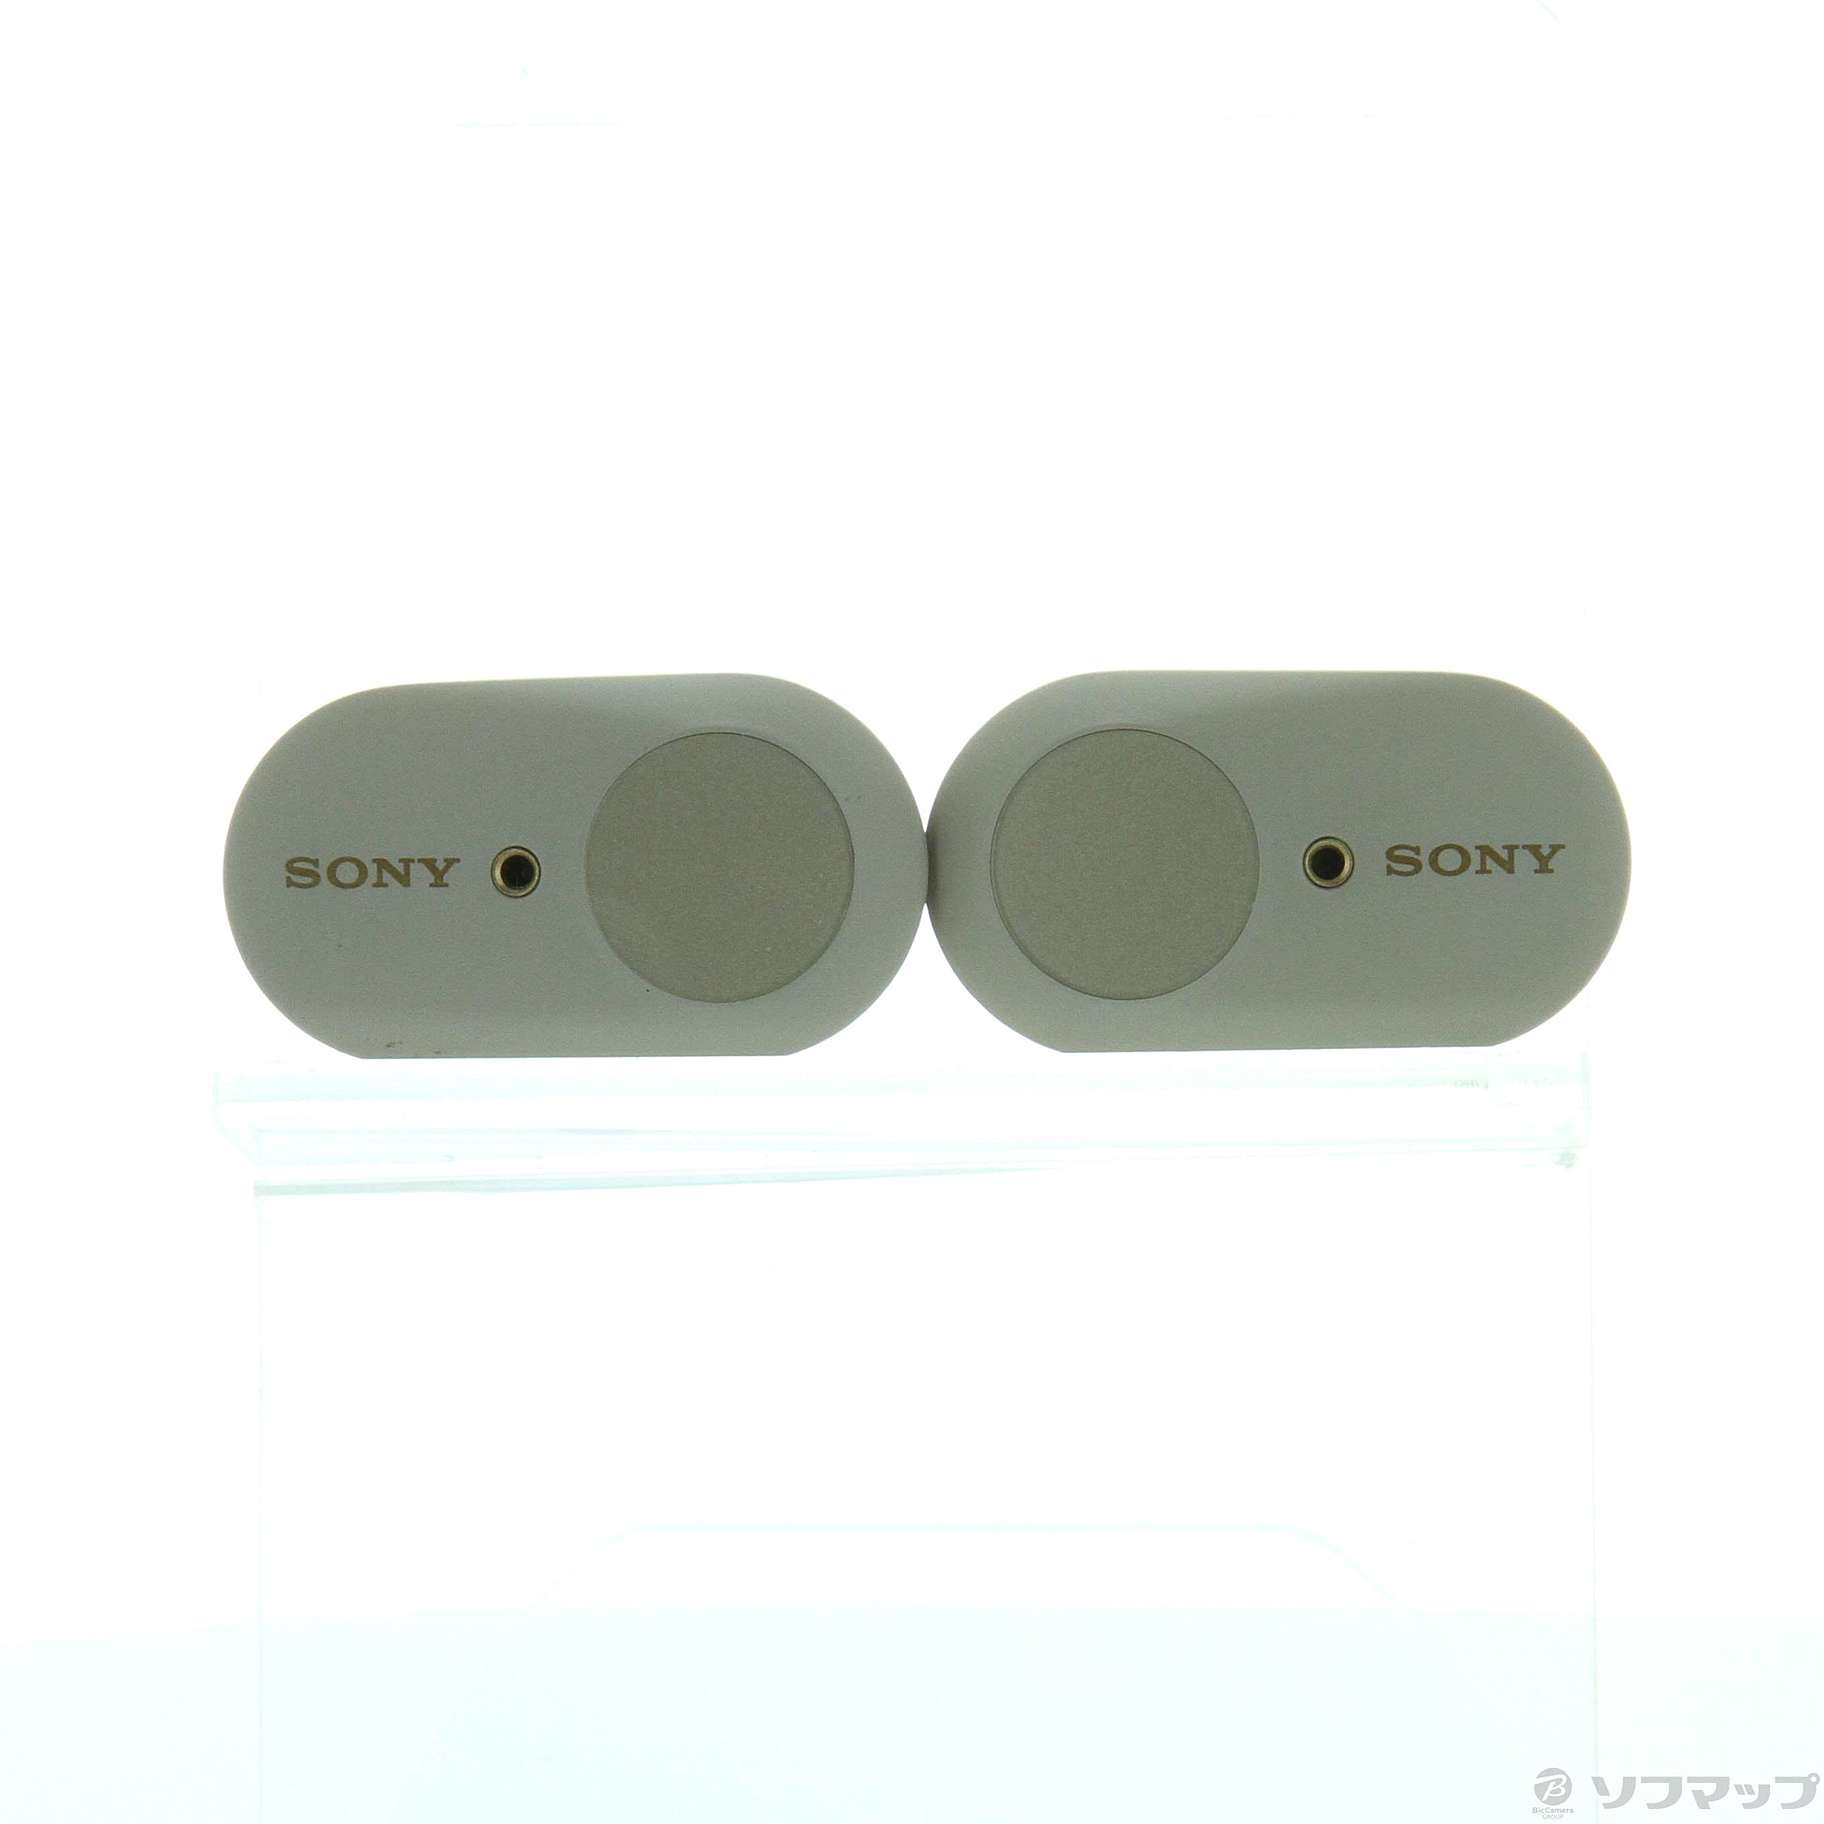 【新品、未使用品】SONY WF-1000XM3(S) シルバー